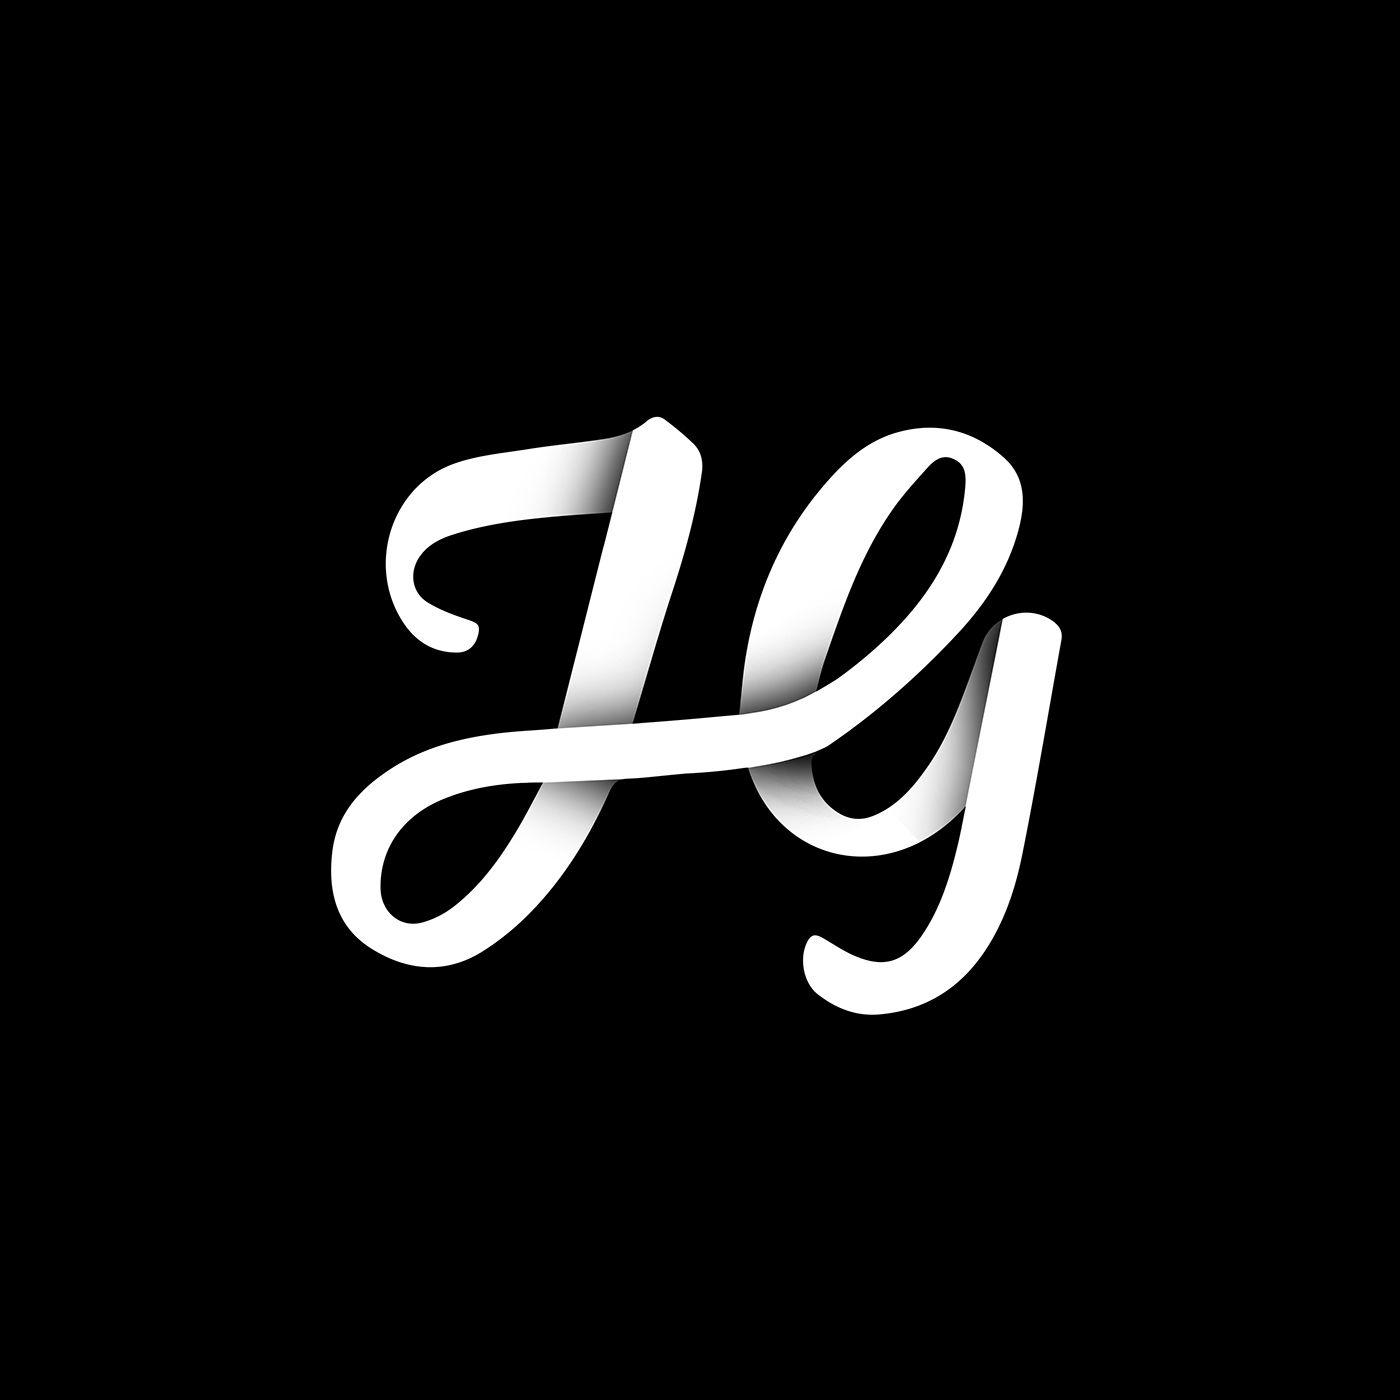 HG Logo - HG Monogram on Behance